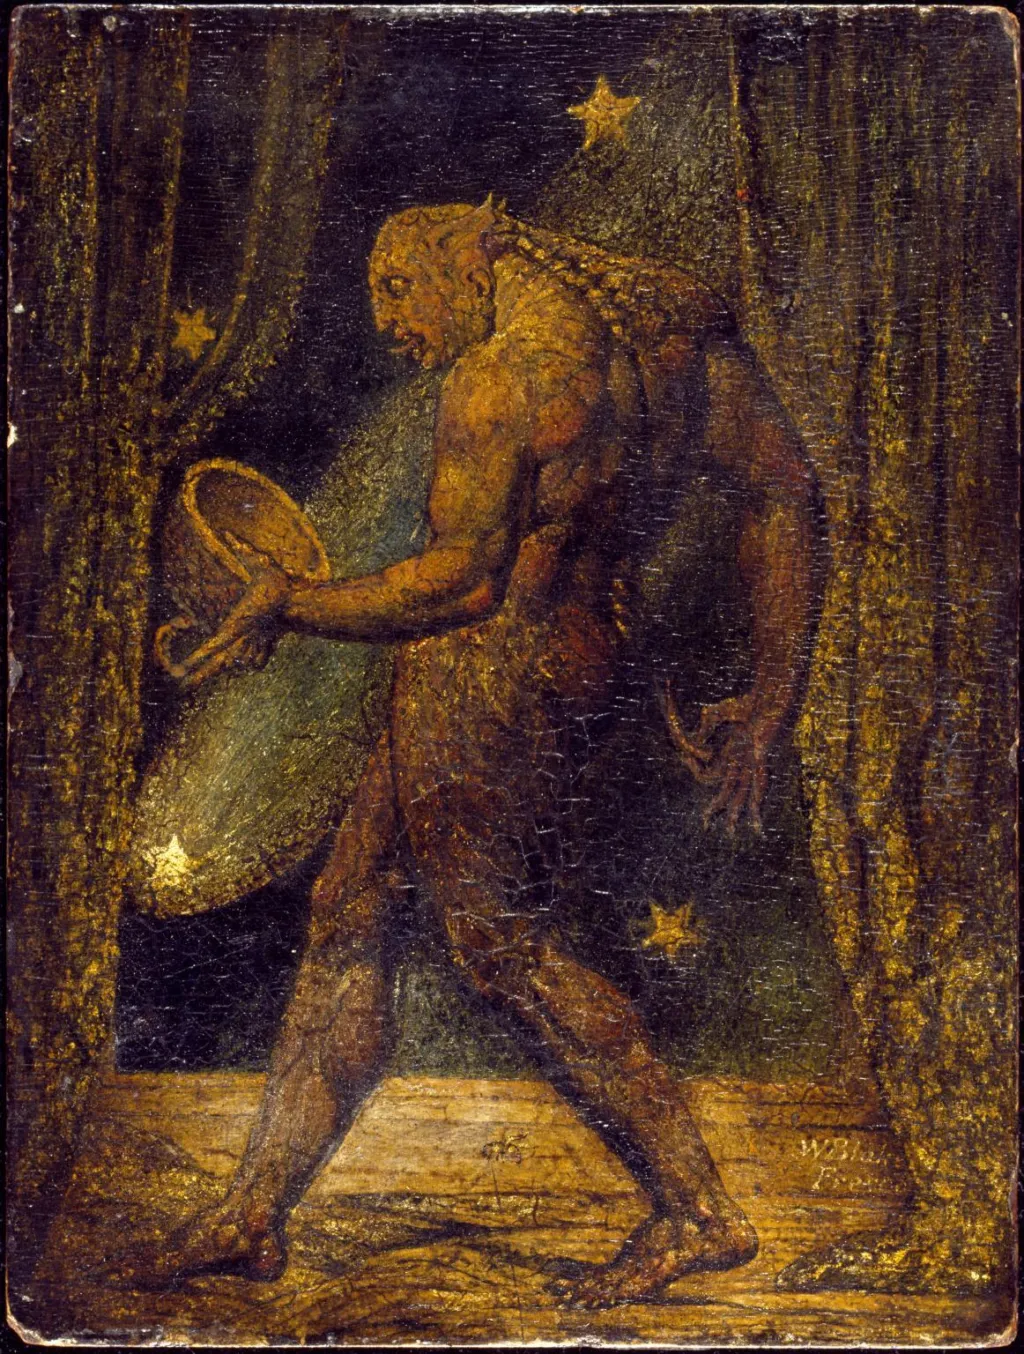 William Blake Life of a Flea 1819 Tate